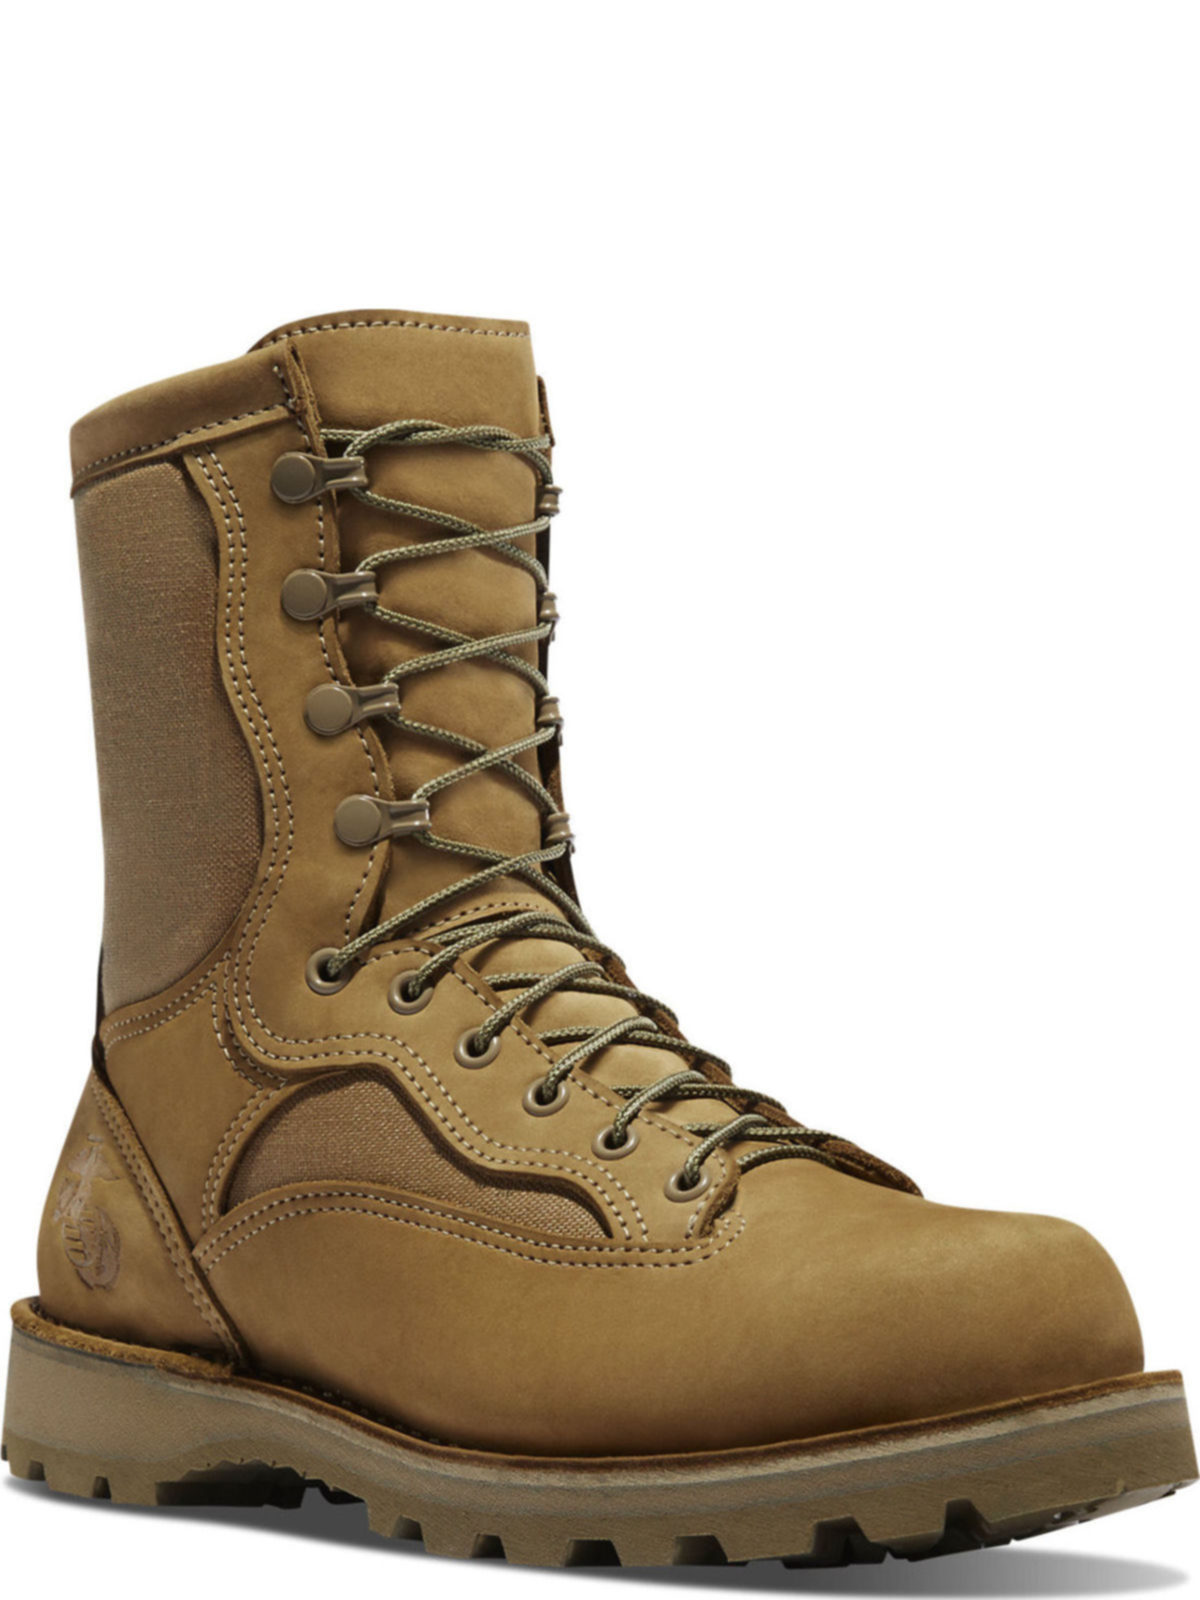 marine steel toe boots